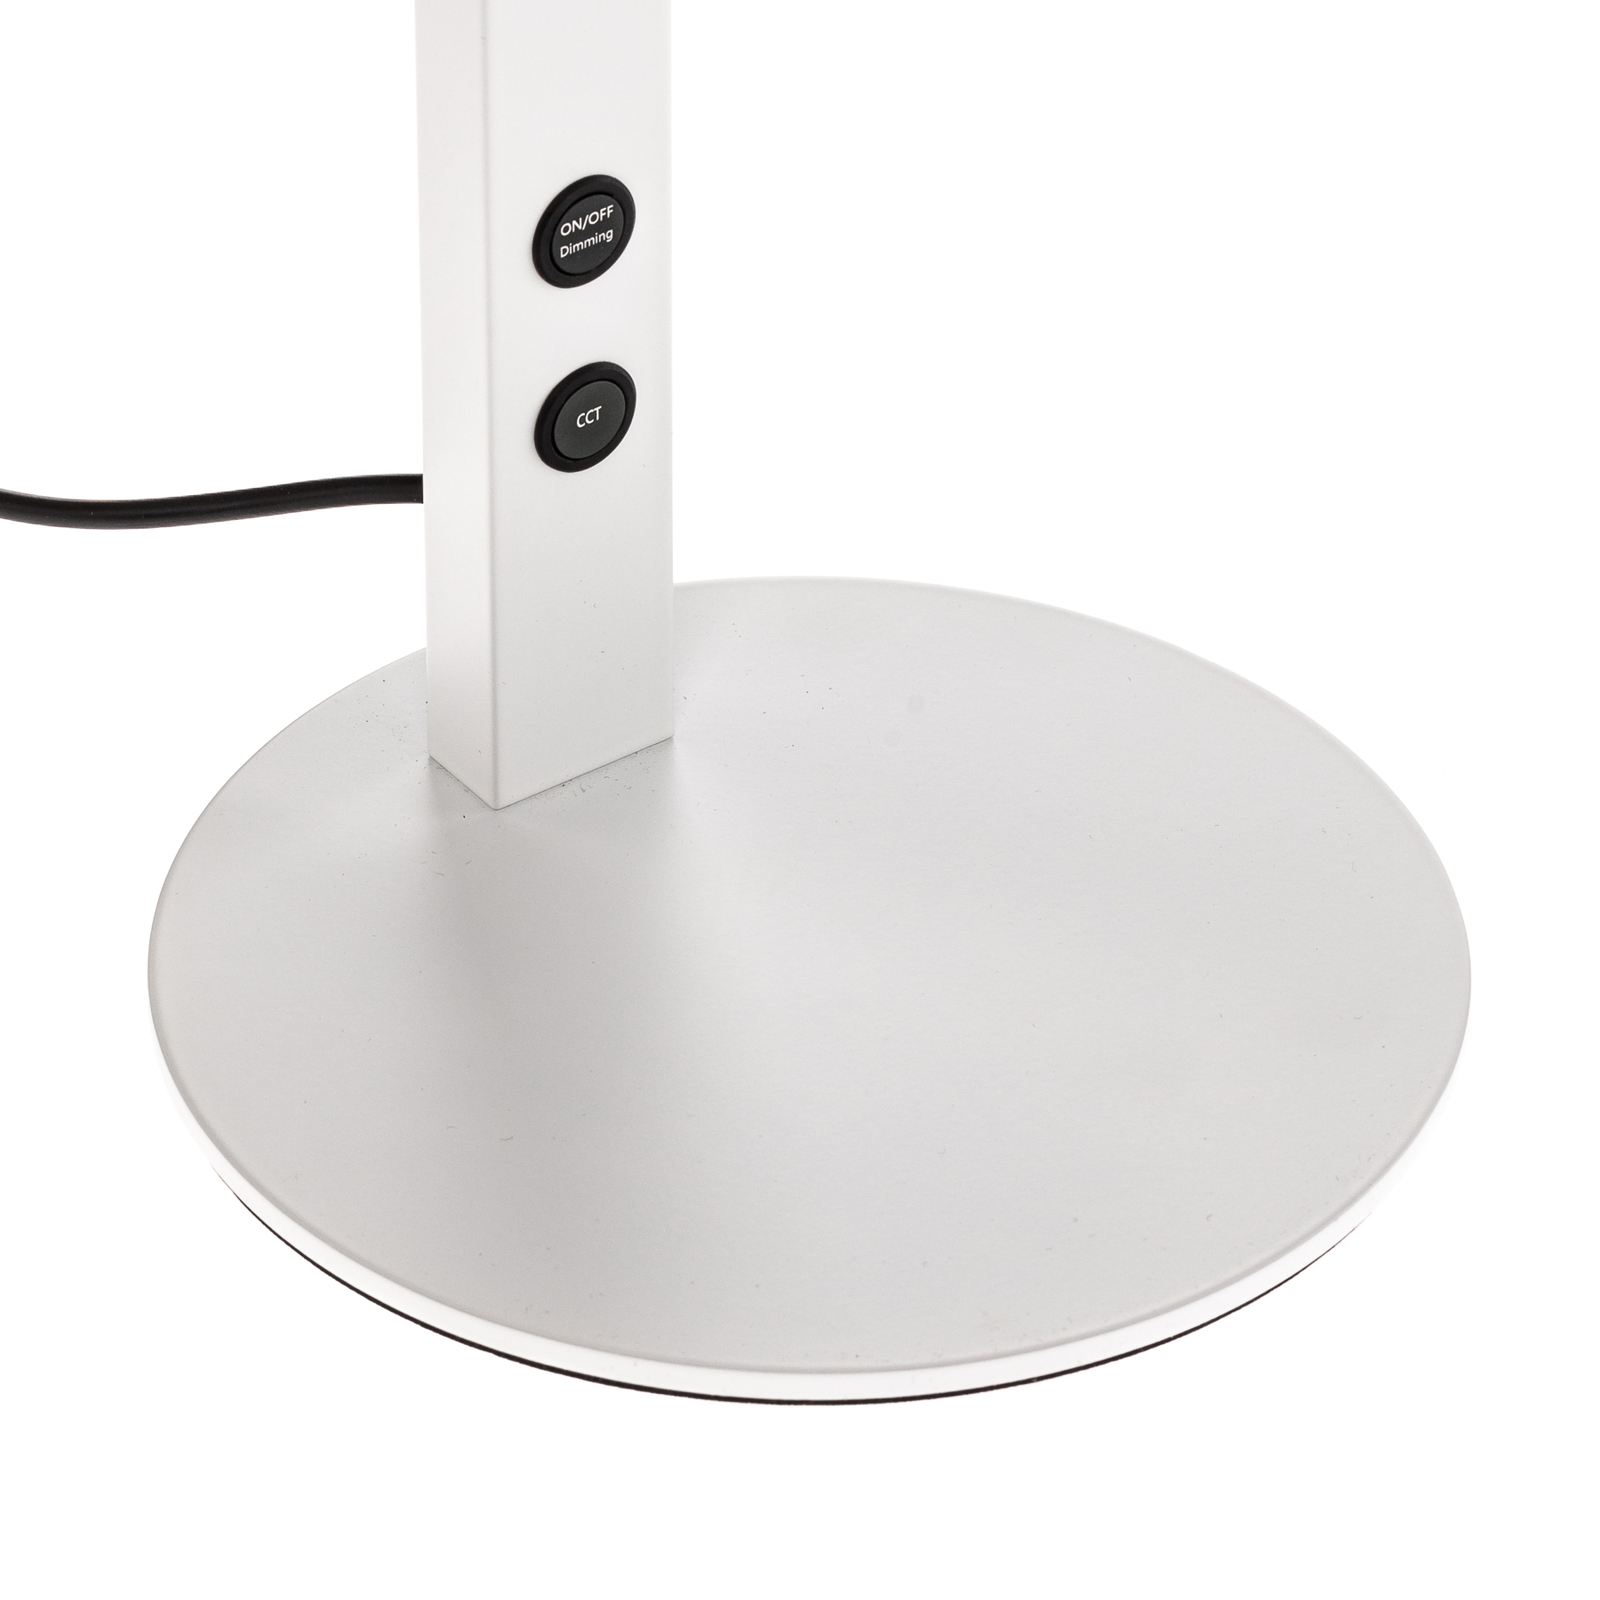 LED-työpöytälamppu Ideal himmentimellä, valkoinen